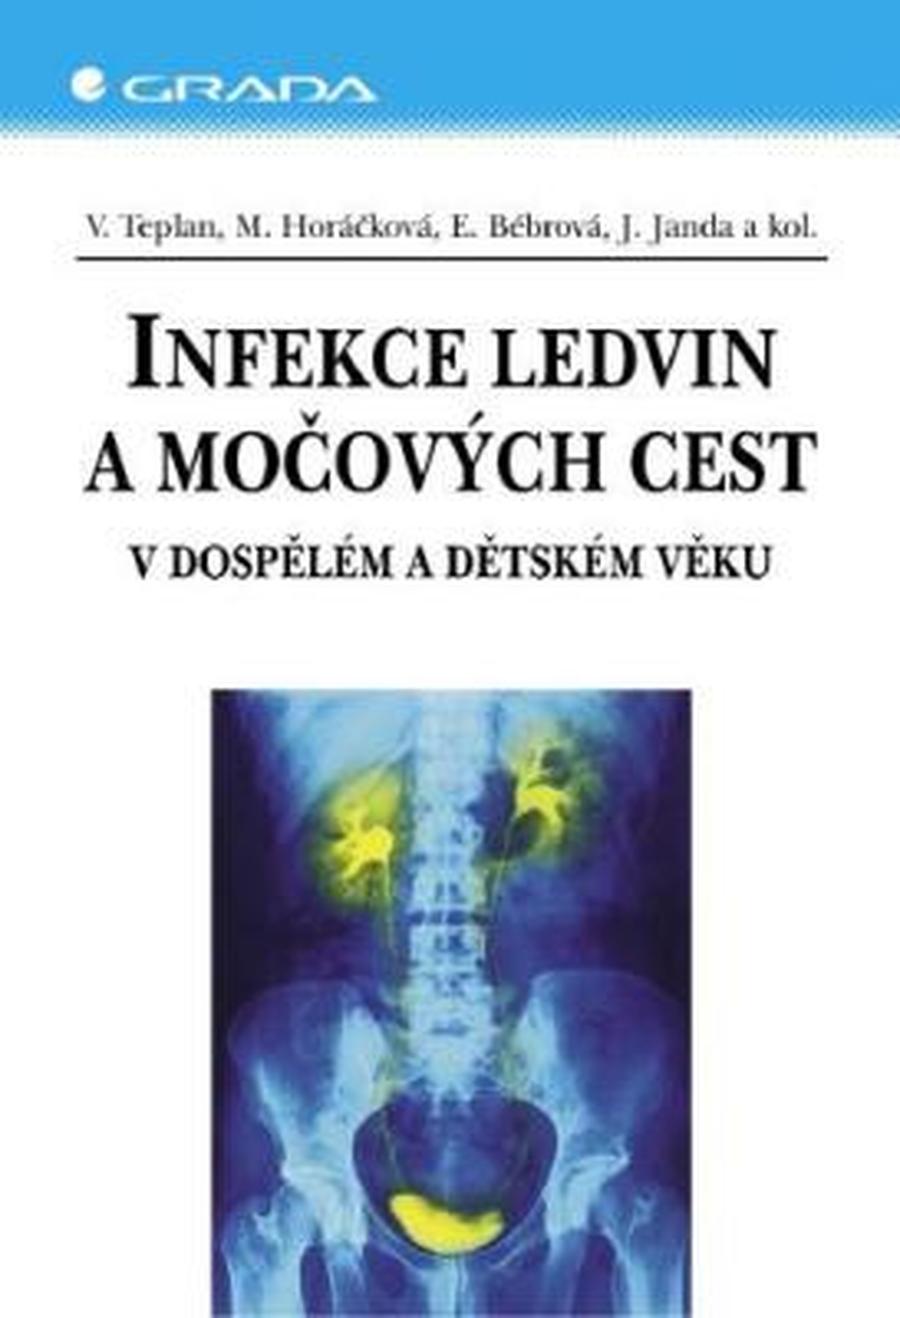 Infekce ledvin a močových cest - Vladimír Teplan, Miroslava Horáčková, Jan Janda, Eliška Bébrová - e-kniha